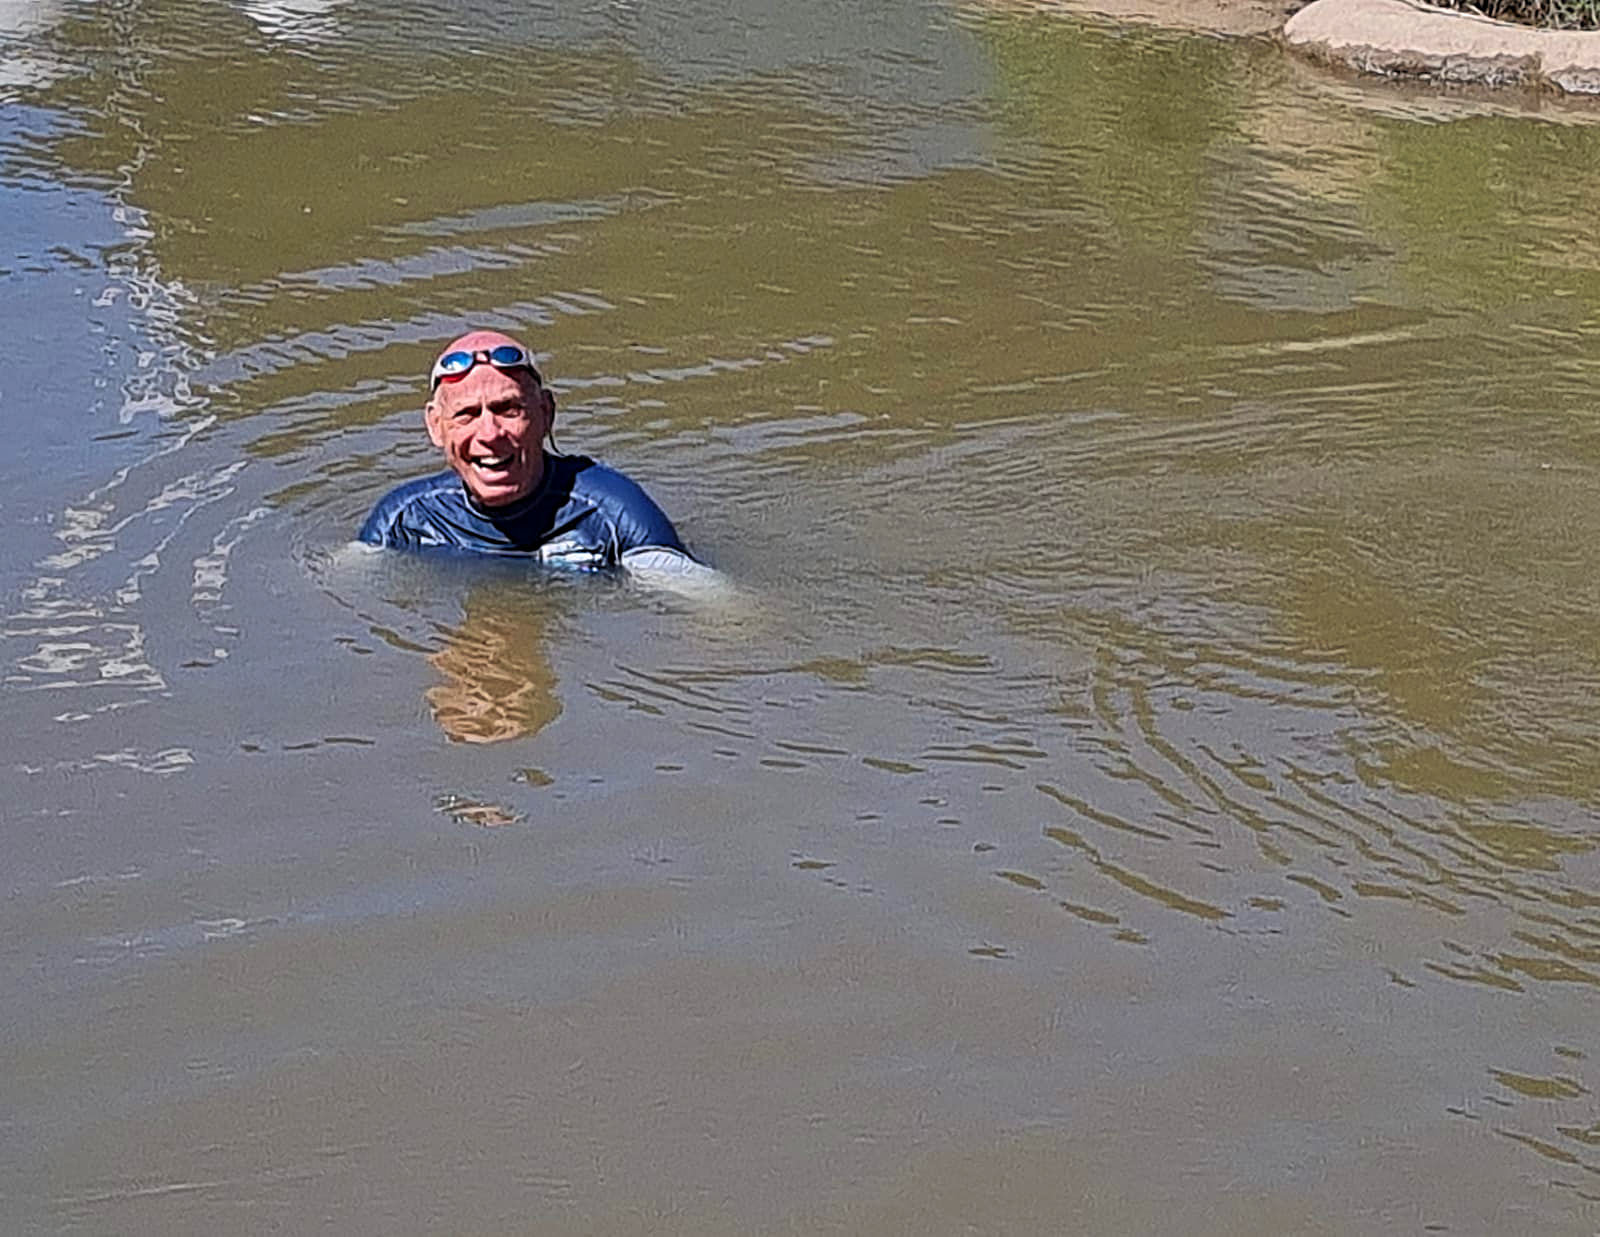 Swimming in the Jordan River, Israel